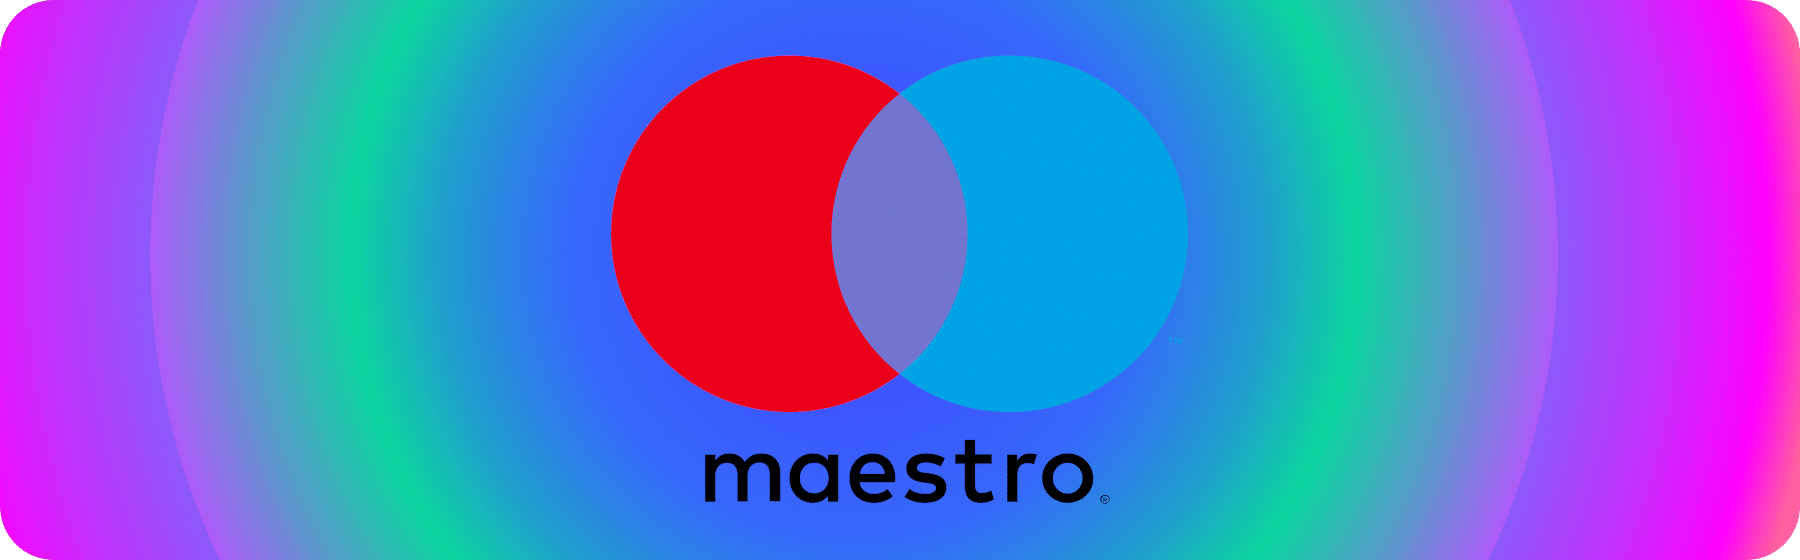 logo voor maestro betaalmethode